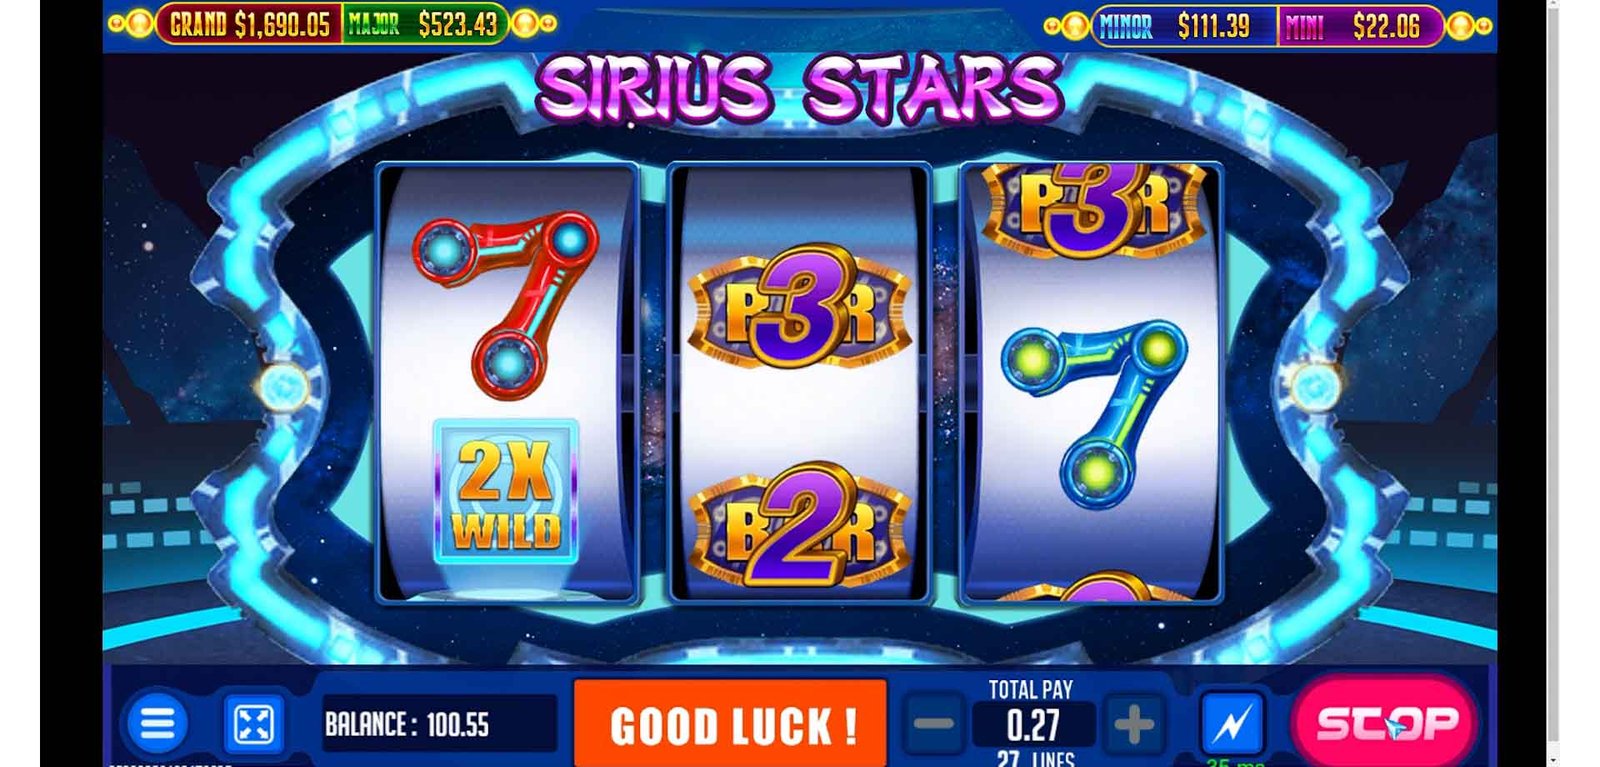 Sirius Stars 7